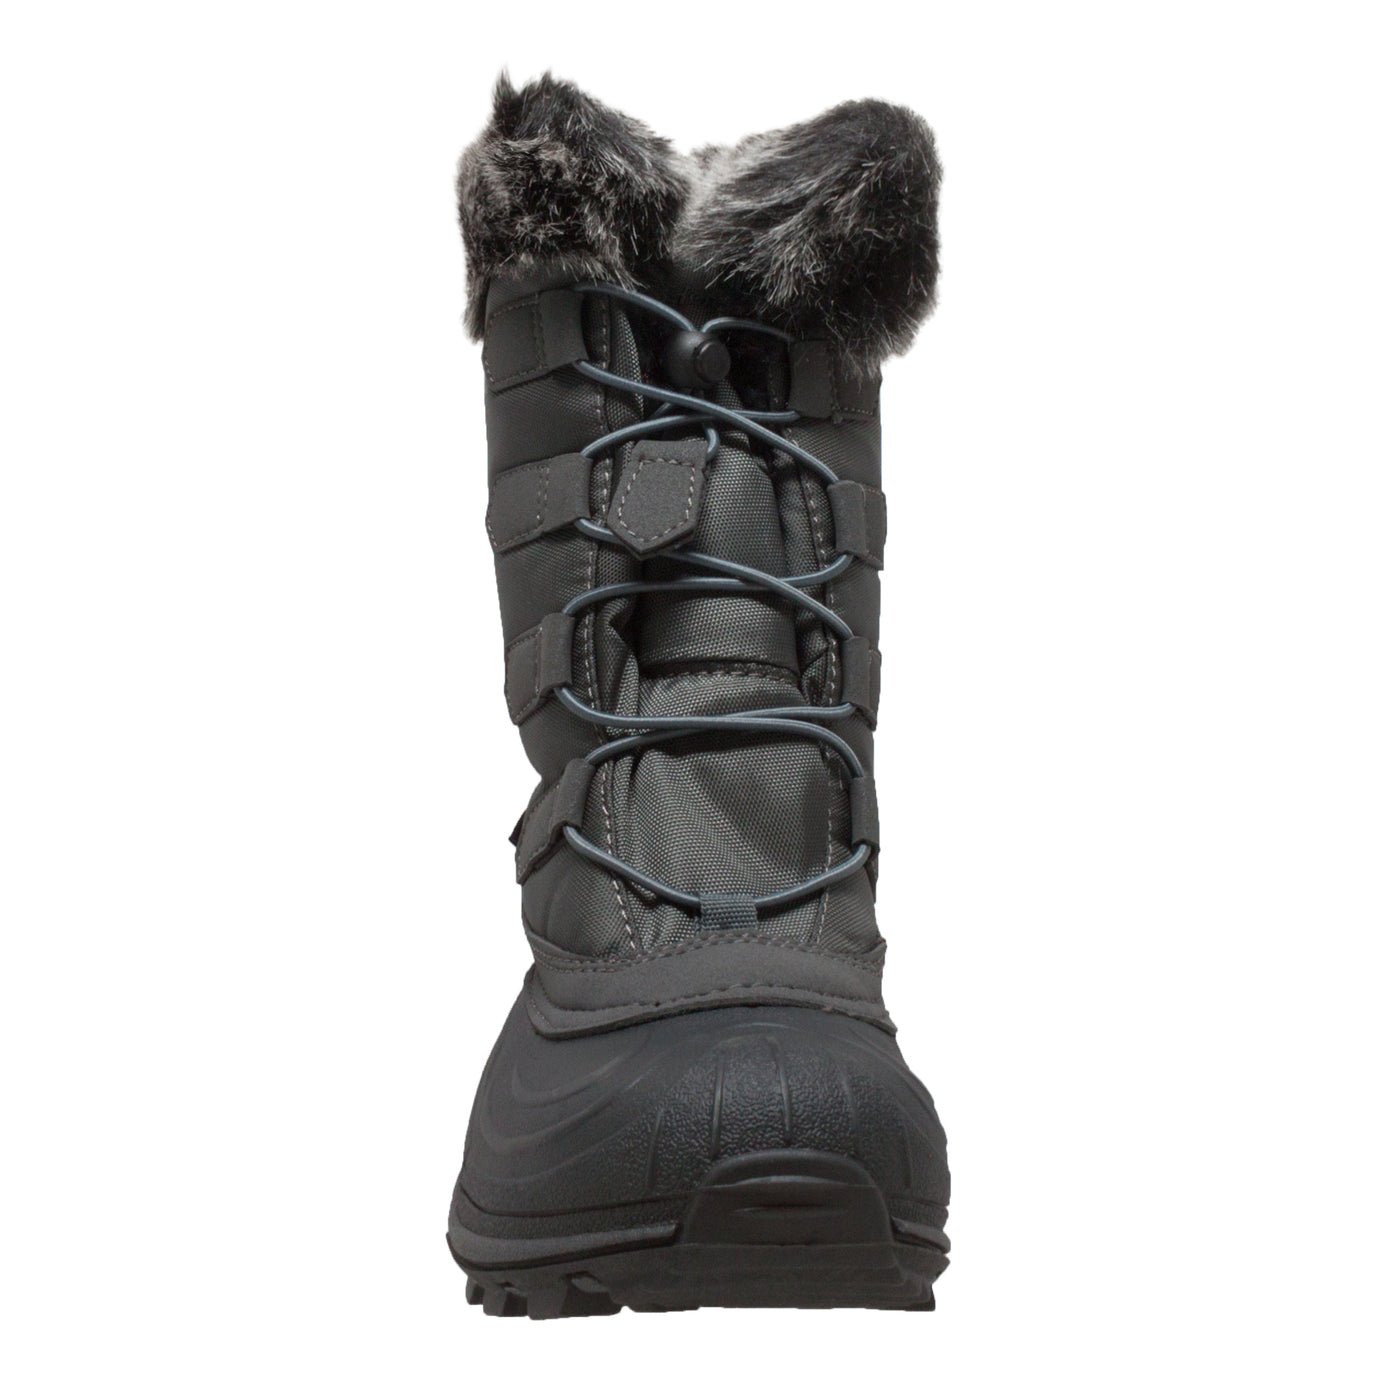 Women's Nylon Winter Boots Grey - 8780-GR - Shop Genuine Leather men & women's boots online | AdTecFootWear